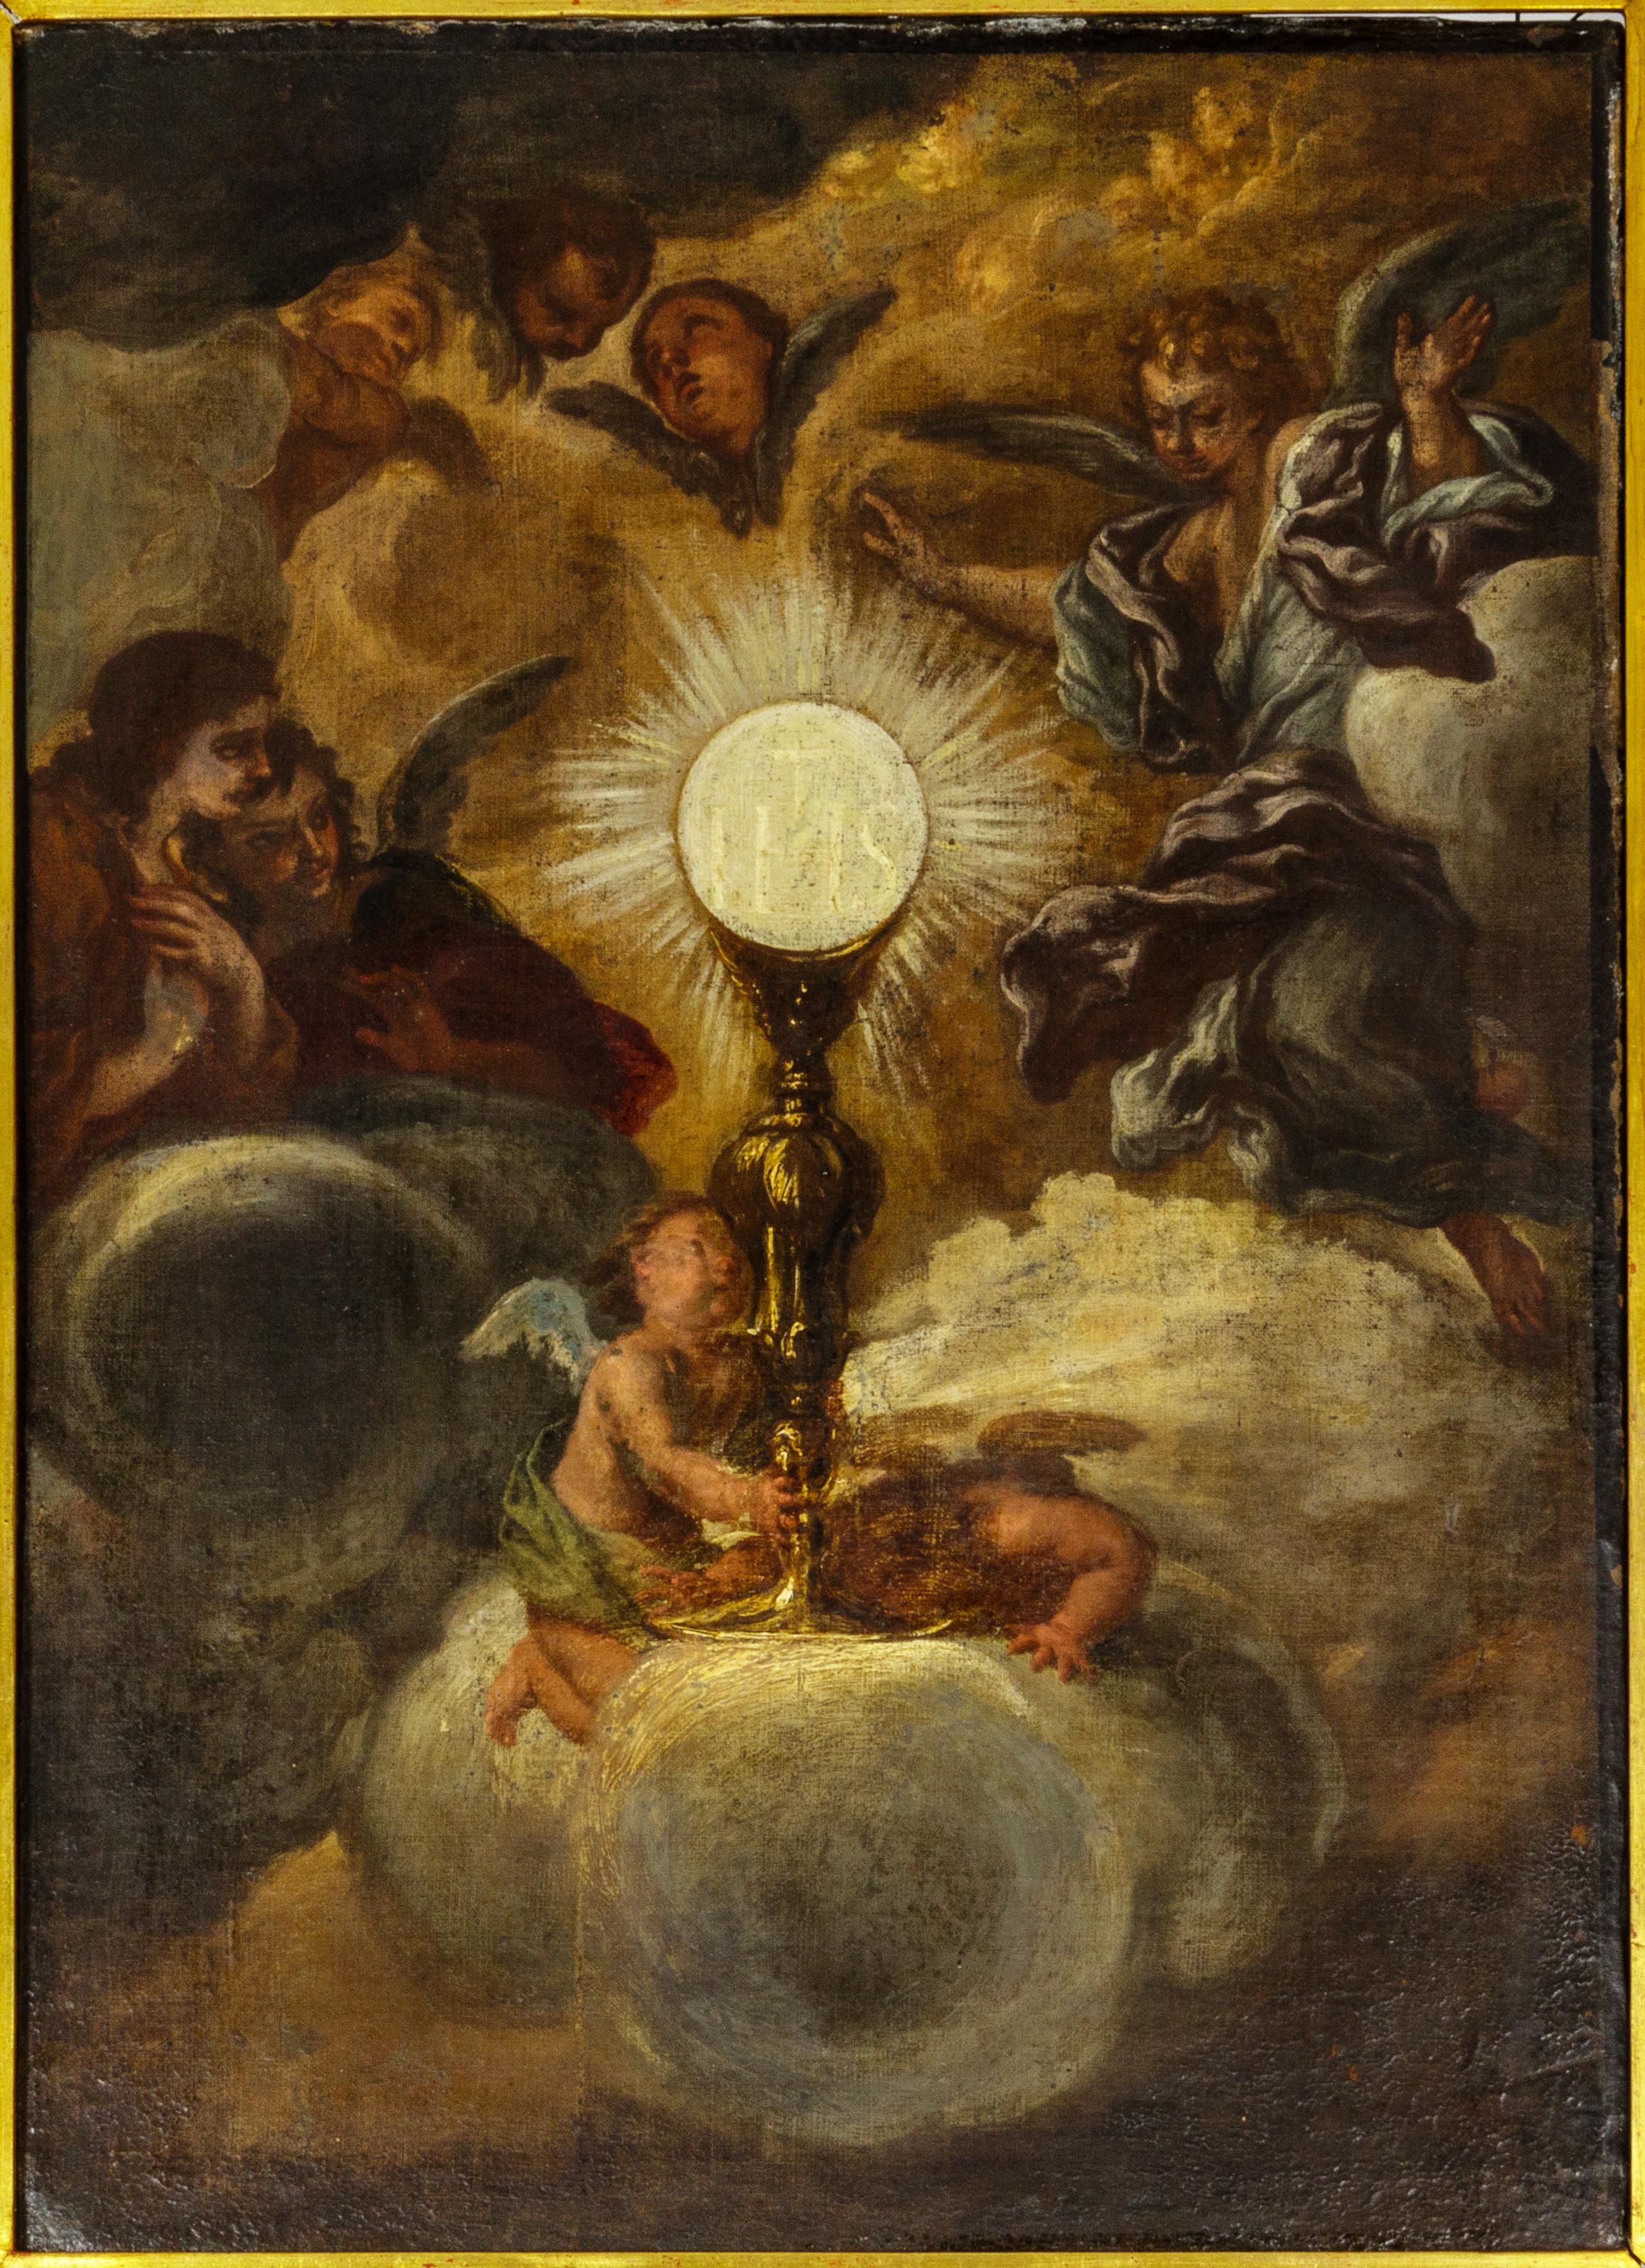 Ein Gemälde aus der Zeit vor 1678 von einem berühmten Fresko des Triumphes des Namens Jesu aus der Gesù-Kirche in Rom, das 1684 vollendet wurde und dem Altmeister Giovanni Battista Gaulli, auch bekannt als Baciccio oder Baciccia, einem italienischen